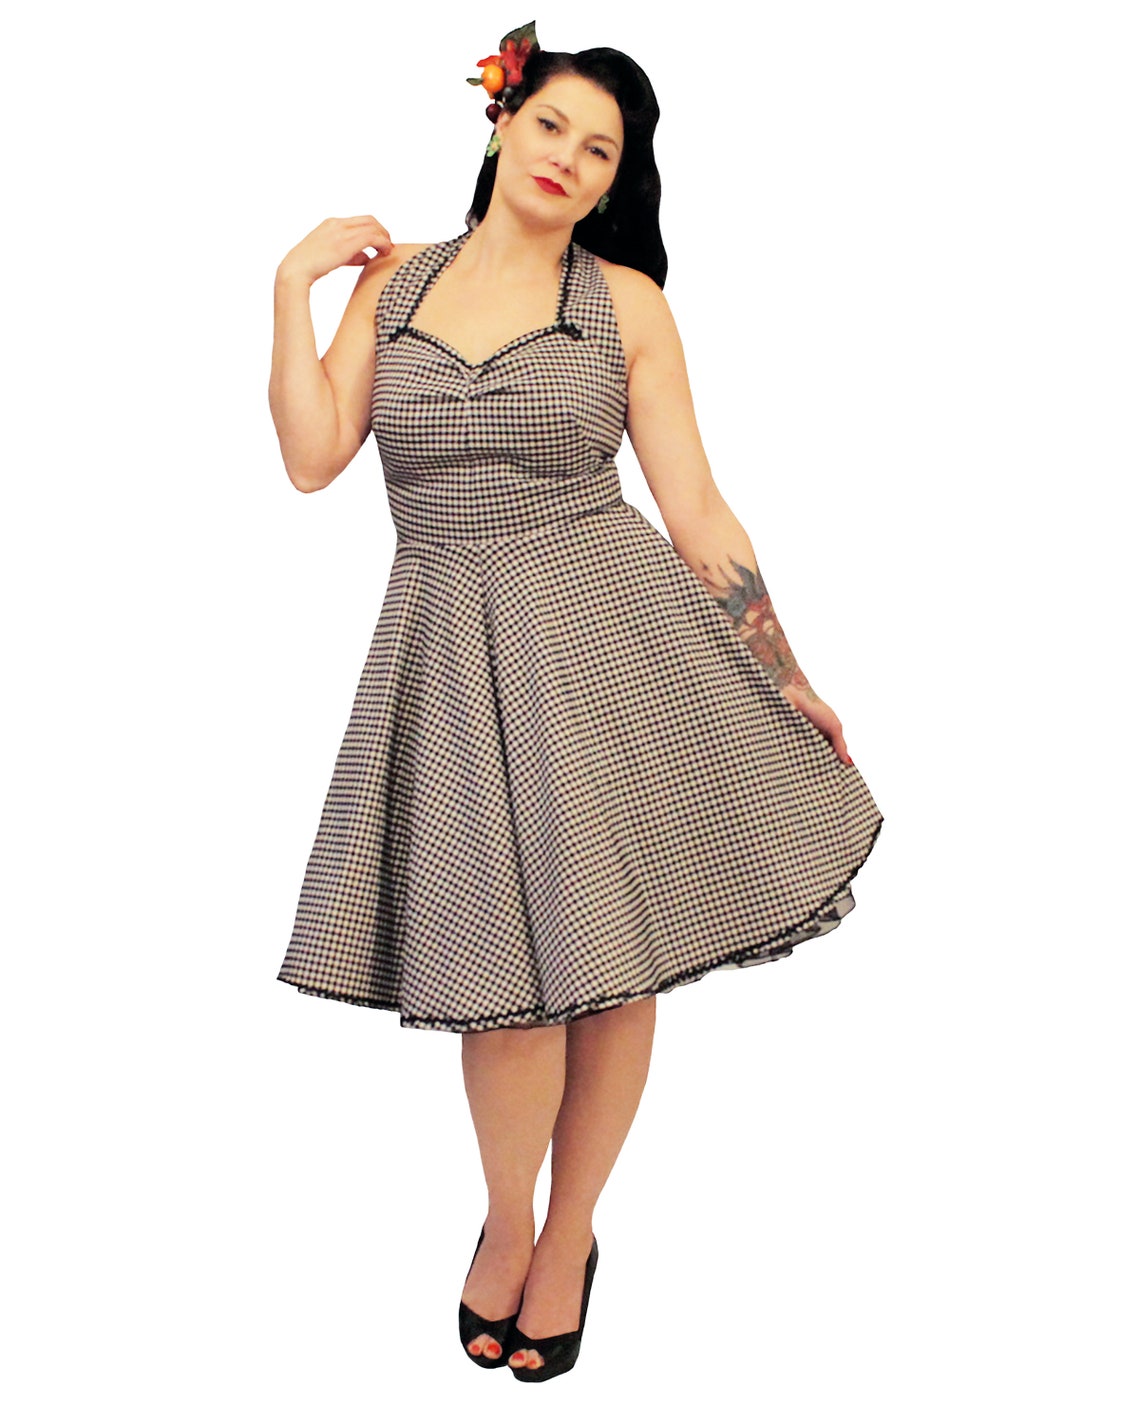 NEW Gloria Dress 1940's reproduction | Etsy